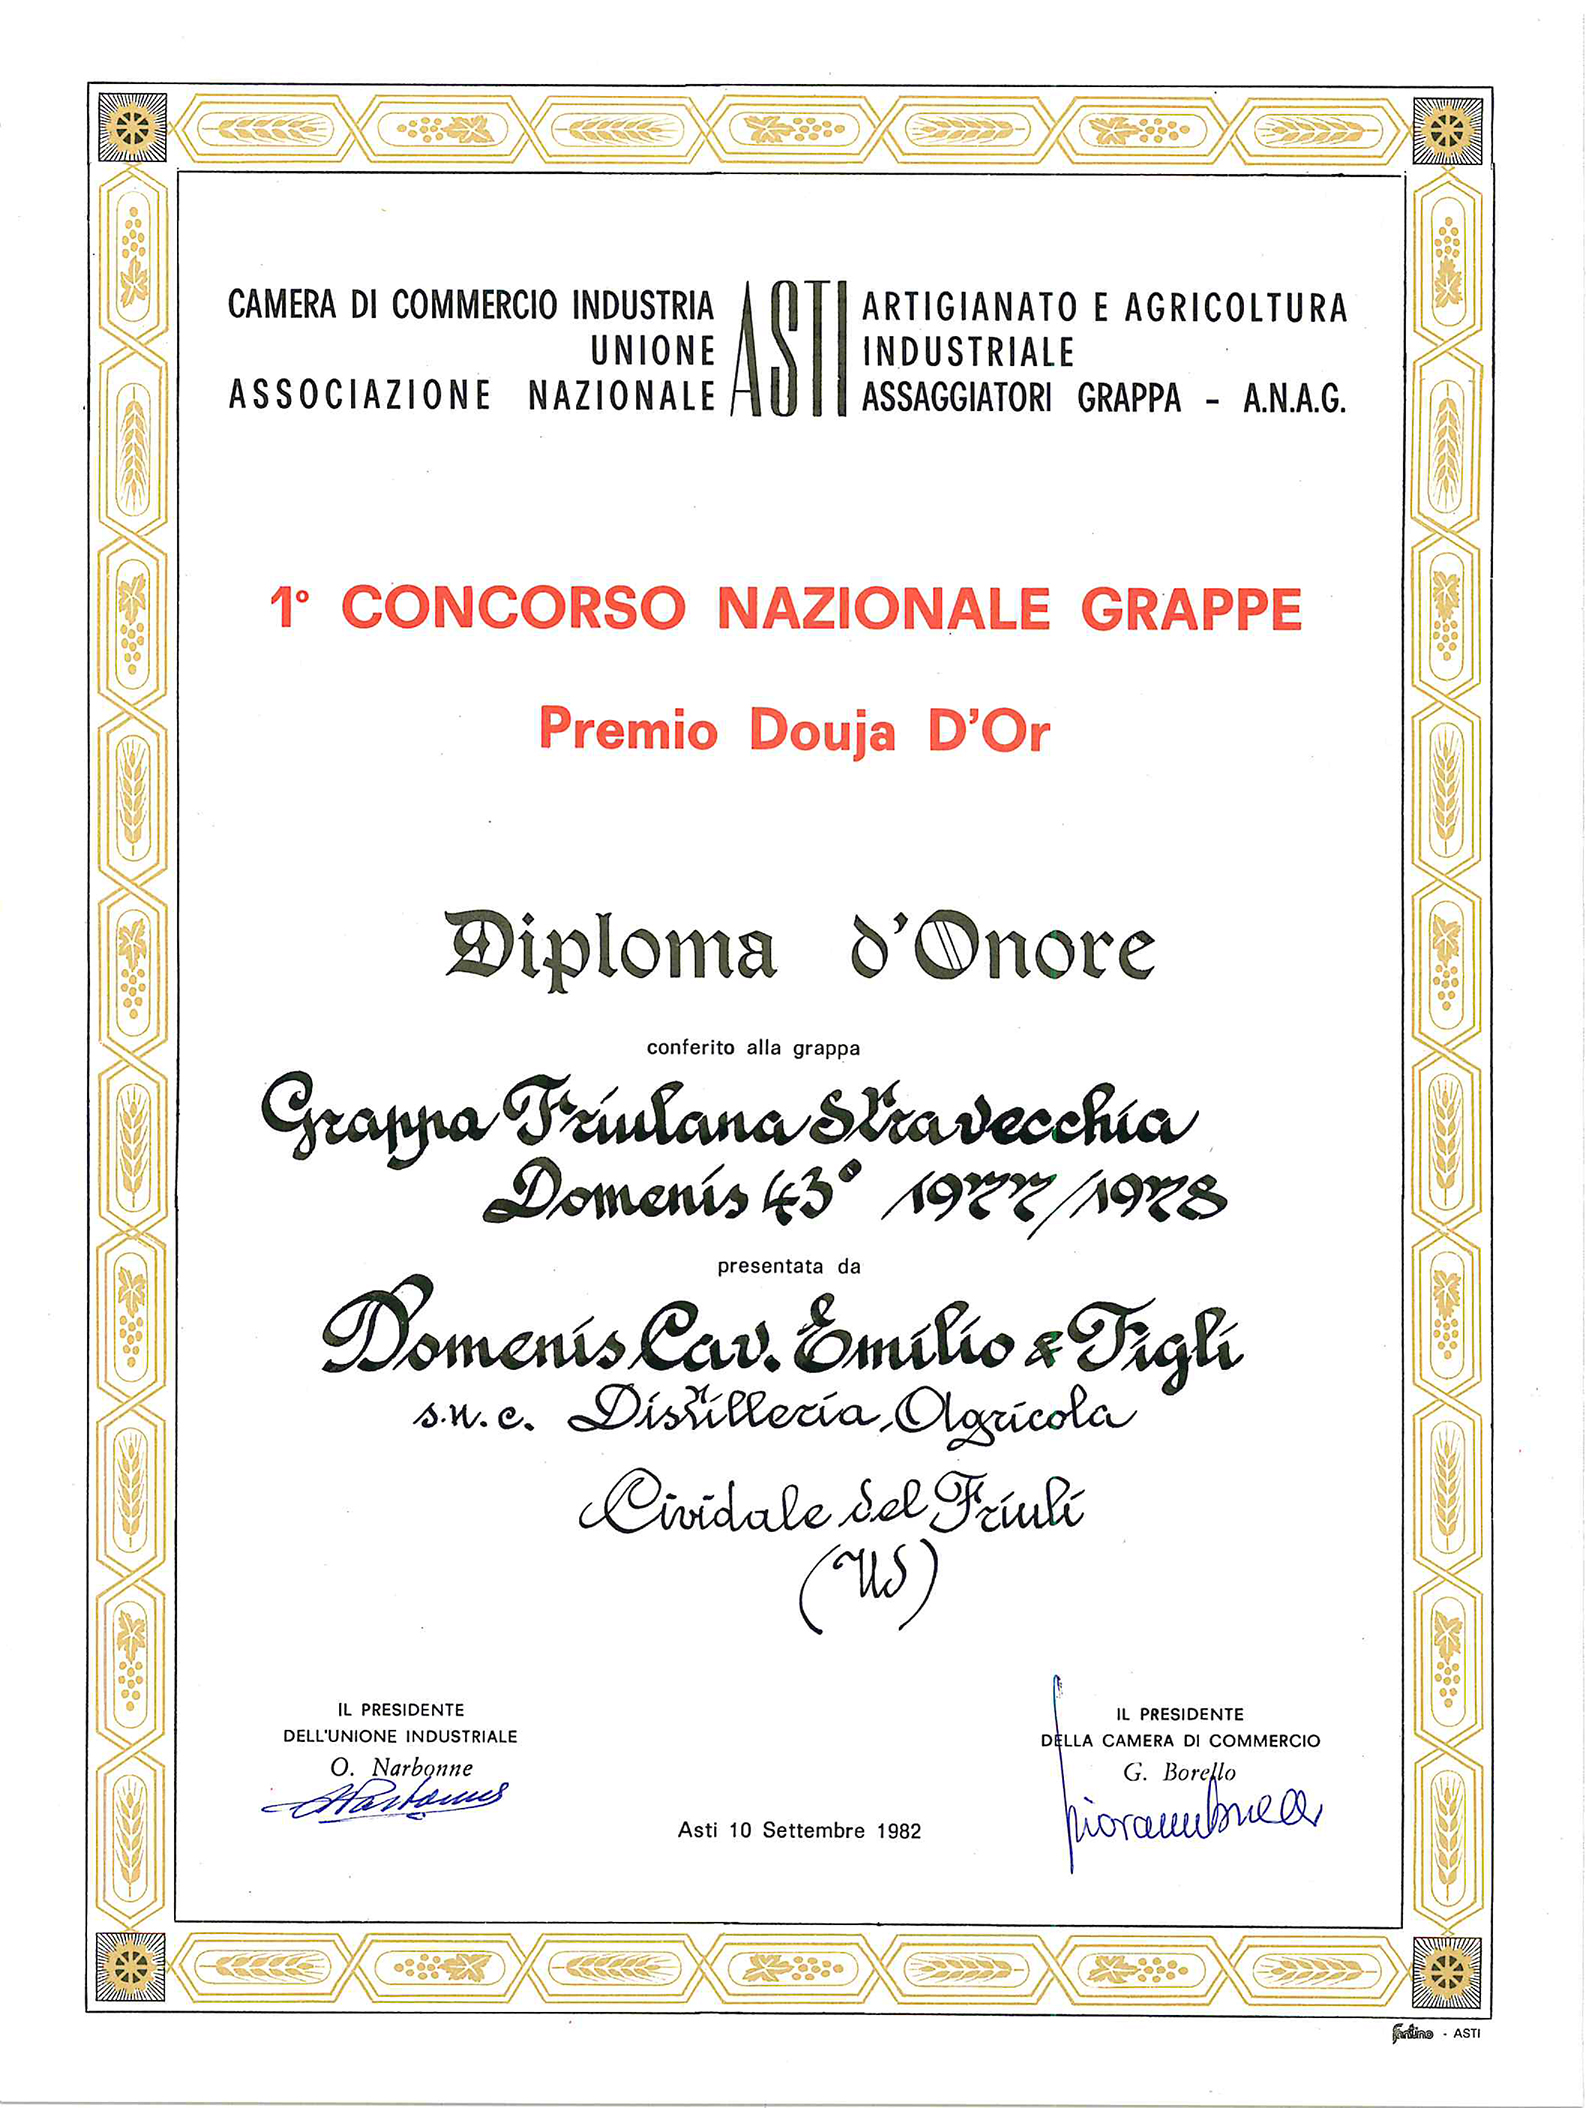 Premio Douja d’Or 1982 – Grappa Friulana Stravecchia Domenis 43° 1977-78